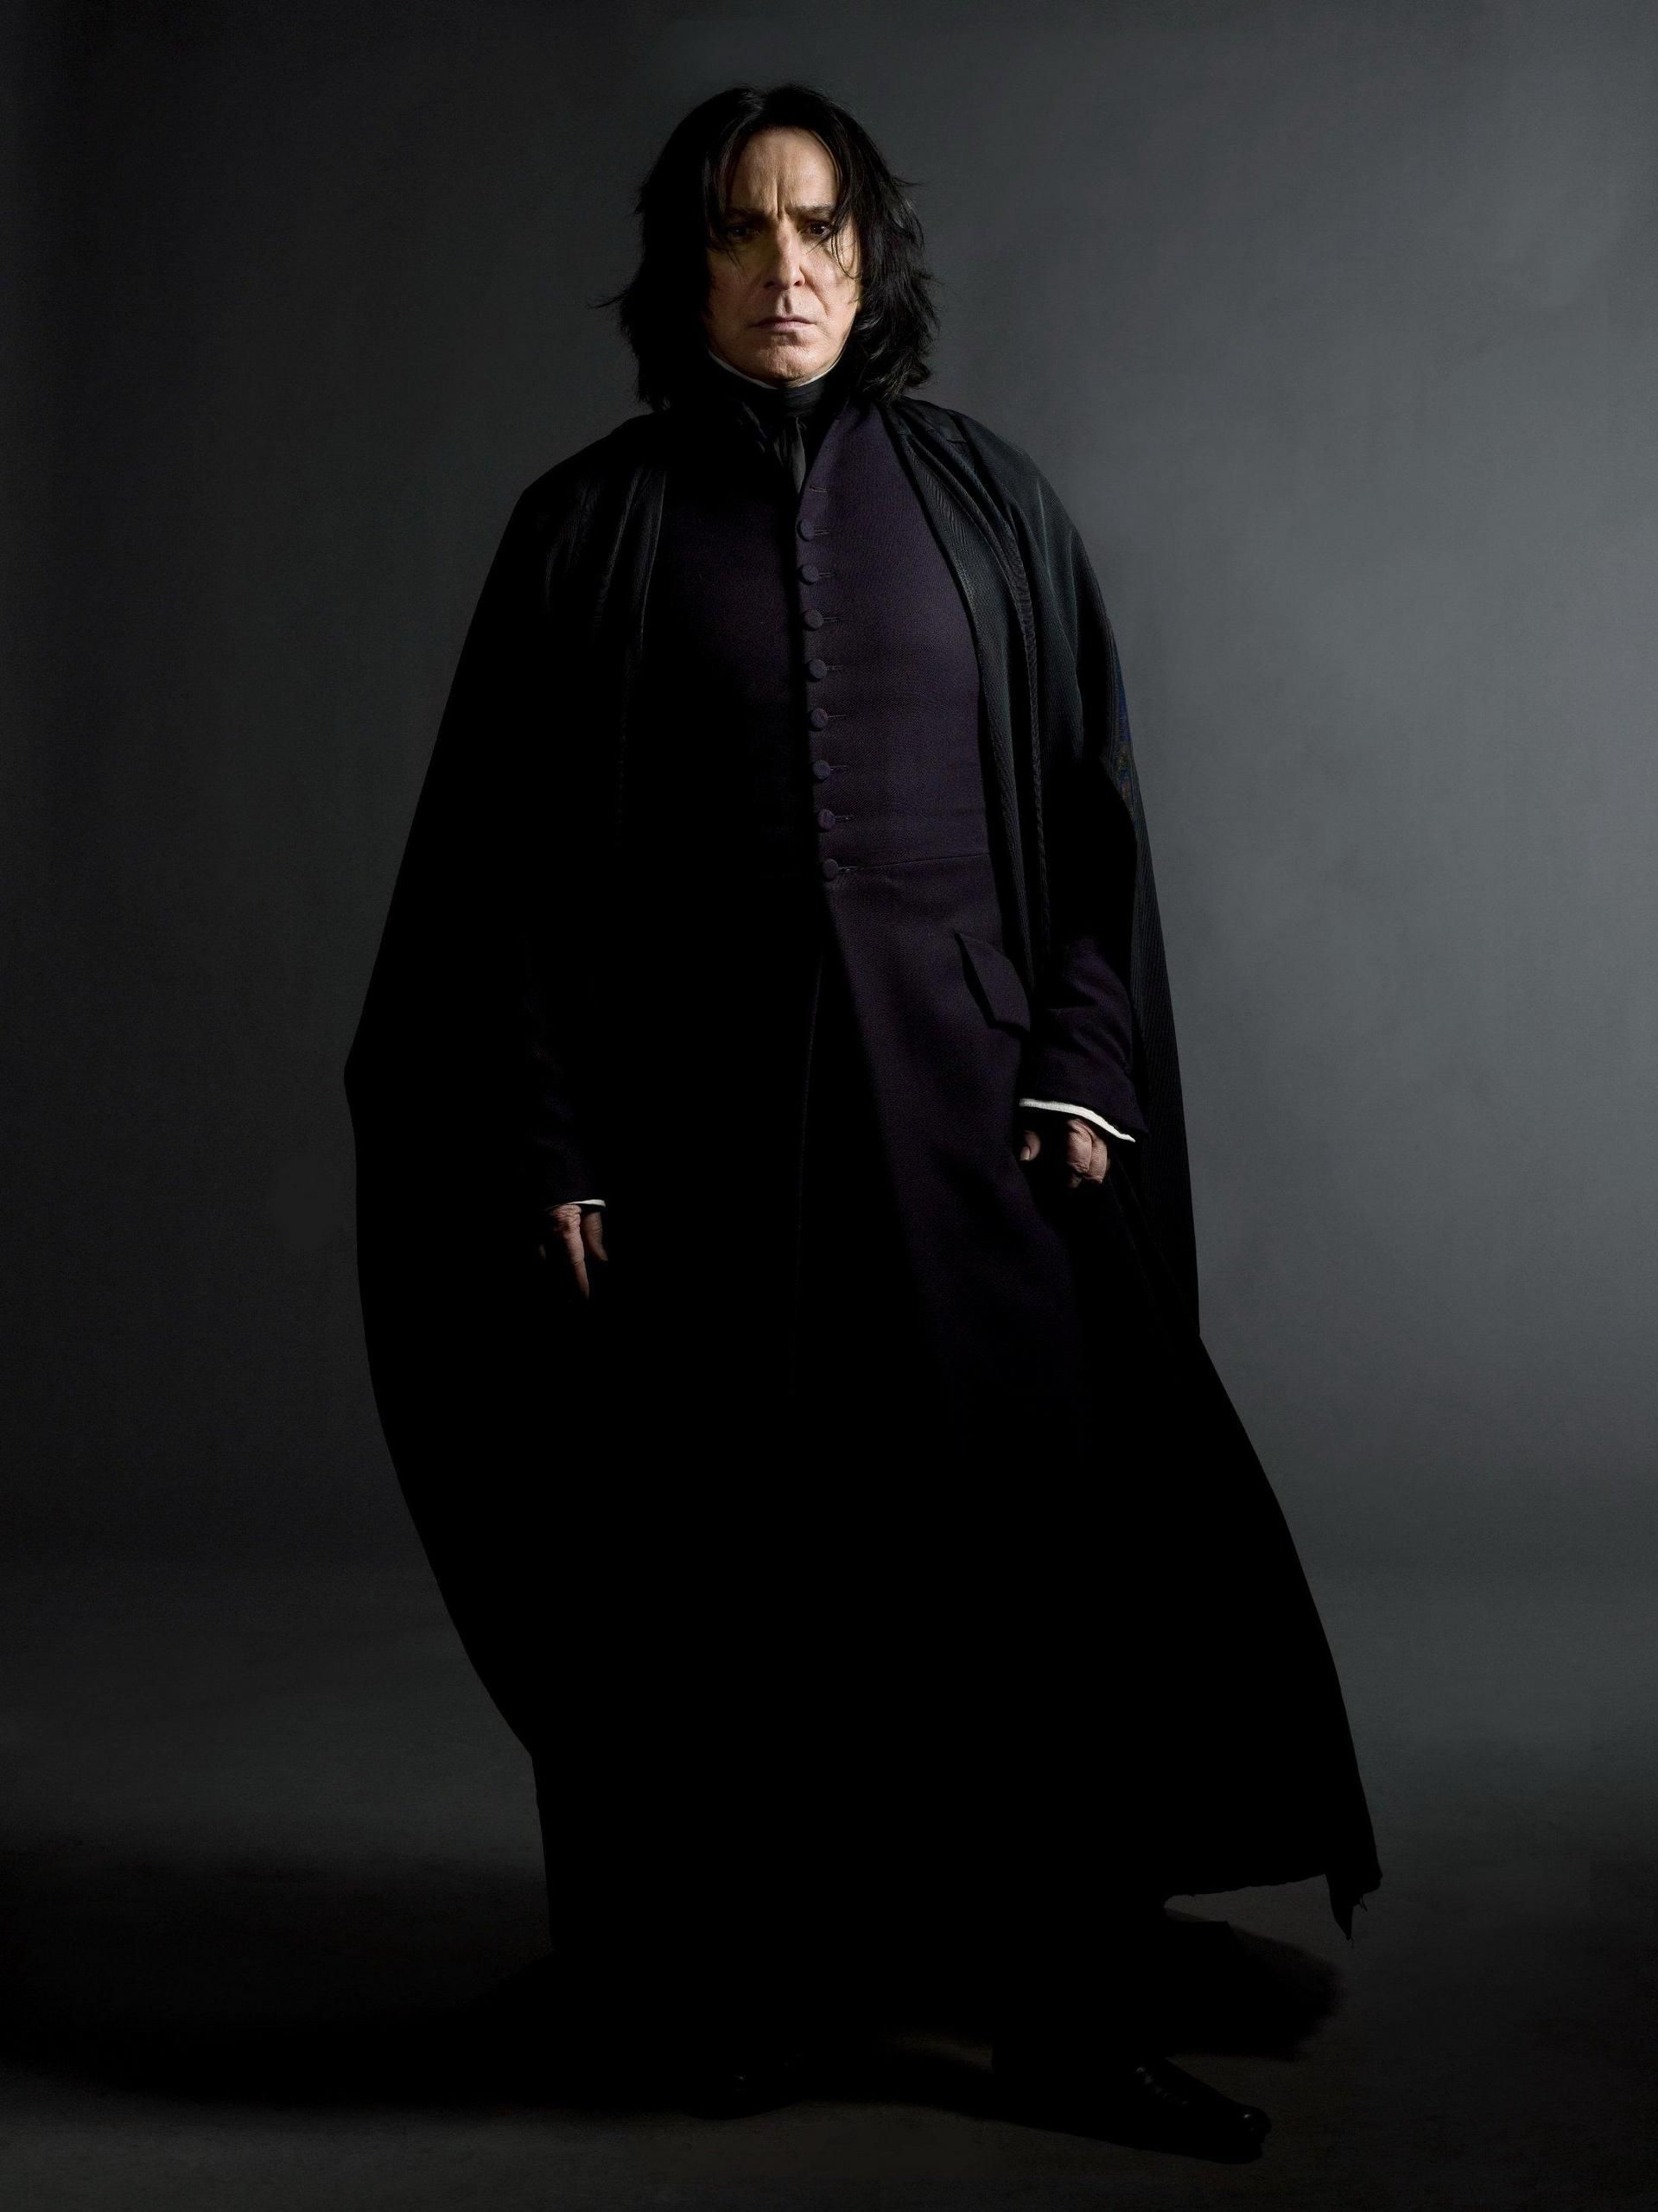 Las 11 frases de Severus Snape que siempre vamos a recordar